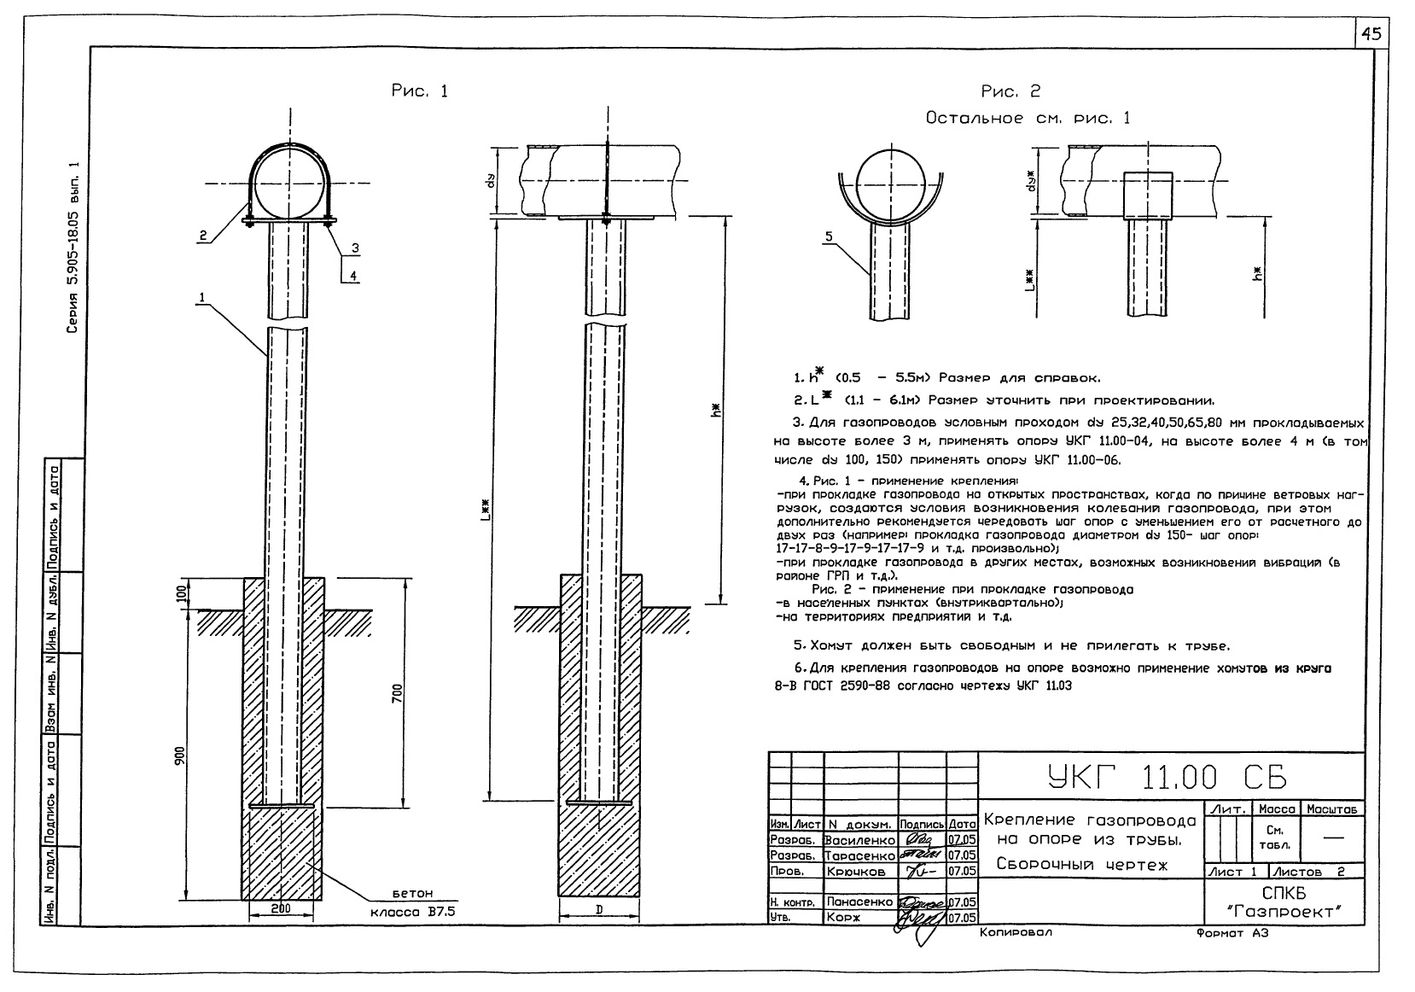 Крепление газопровода на опоре из труб УКГ 11.00 СБ серия 5.905-18.05 выпуск 1 стр.1